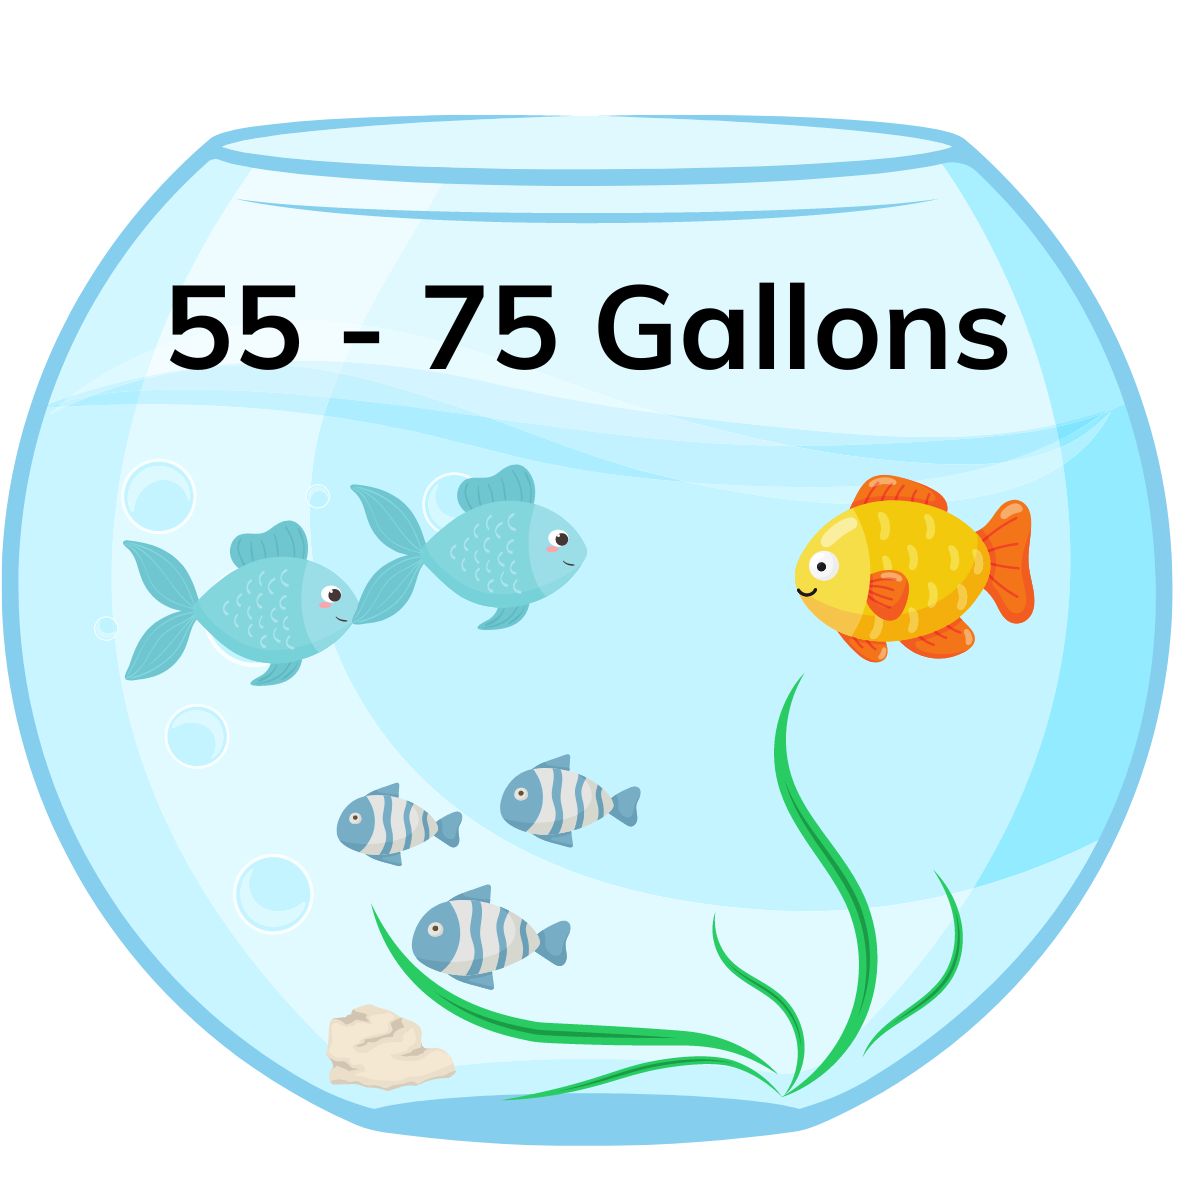 55 - 75 gallon tank